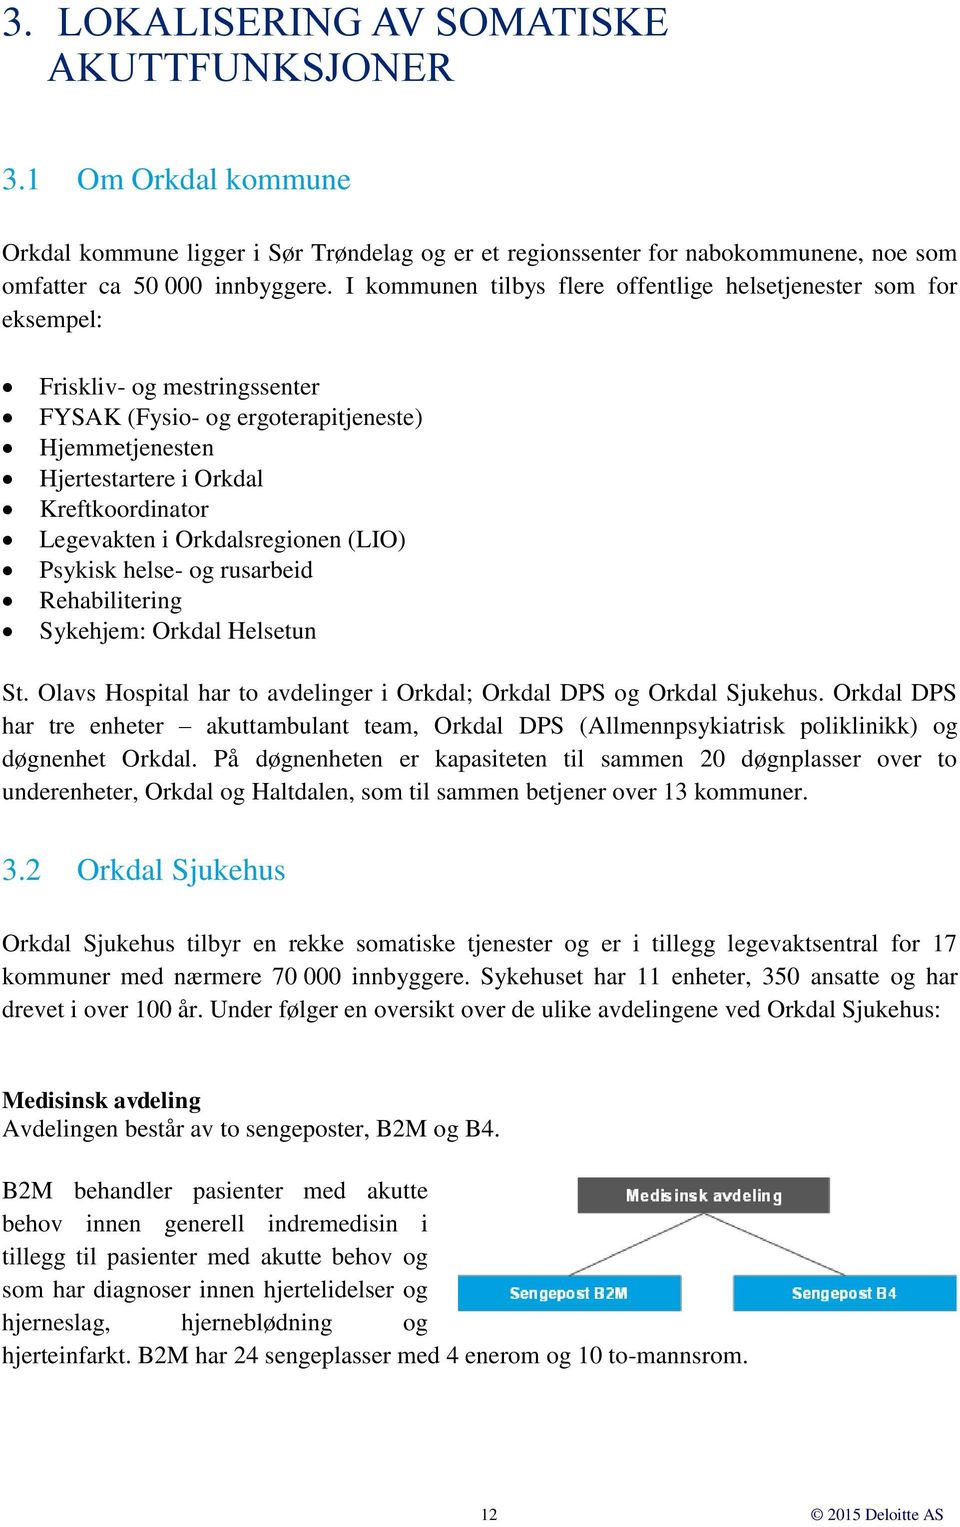 Legevakten i Orkdalsregionen (LIO) Psykisk helse- og rusarbeid Rehabilitering Sykehjem: Orkdal Helsetun St. Olavs Hospital har to avdelinger i Orkdal; Orkdal DPS og Orkdal Sjukehus.